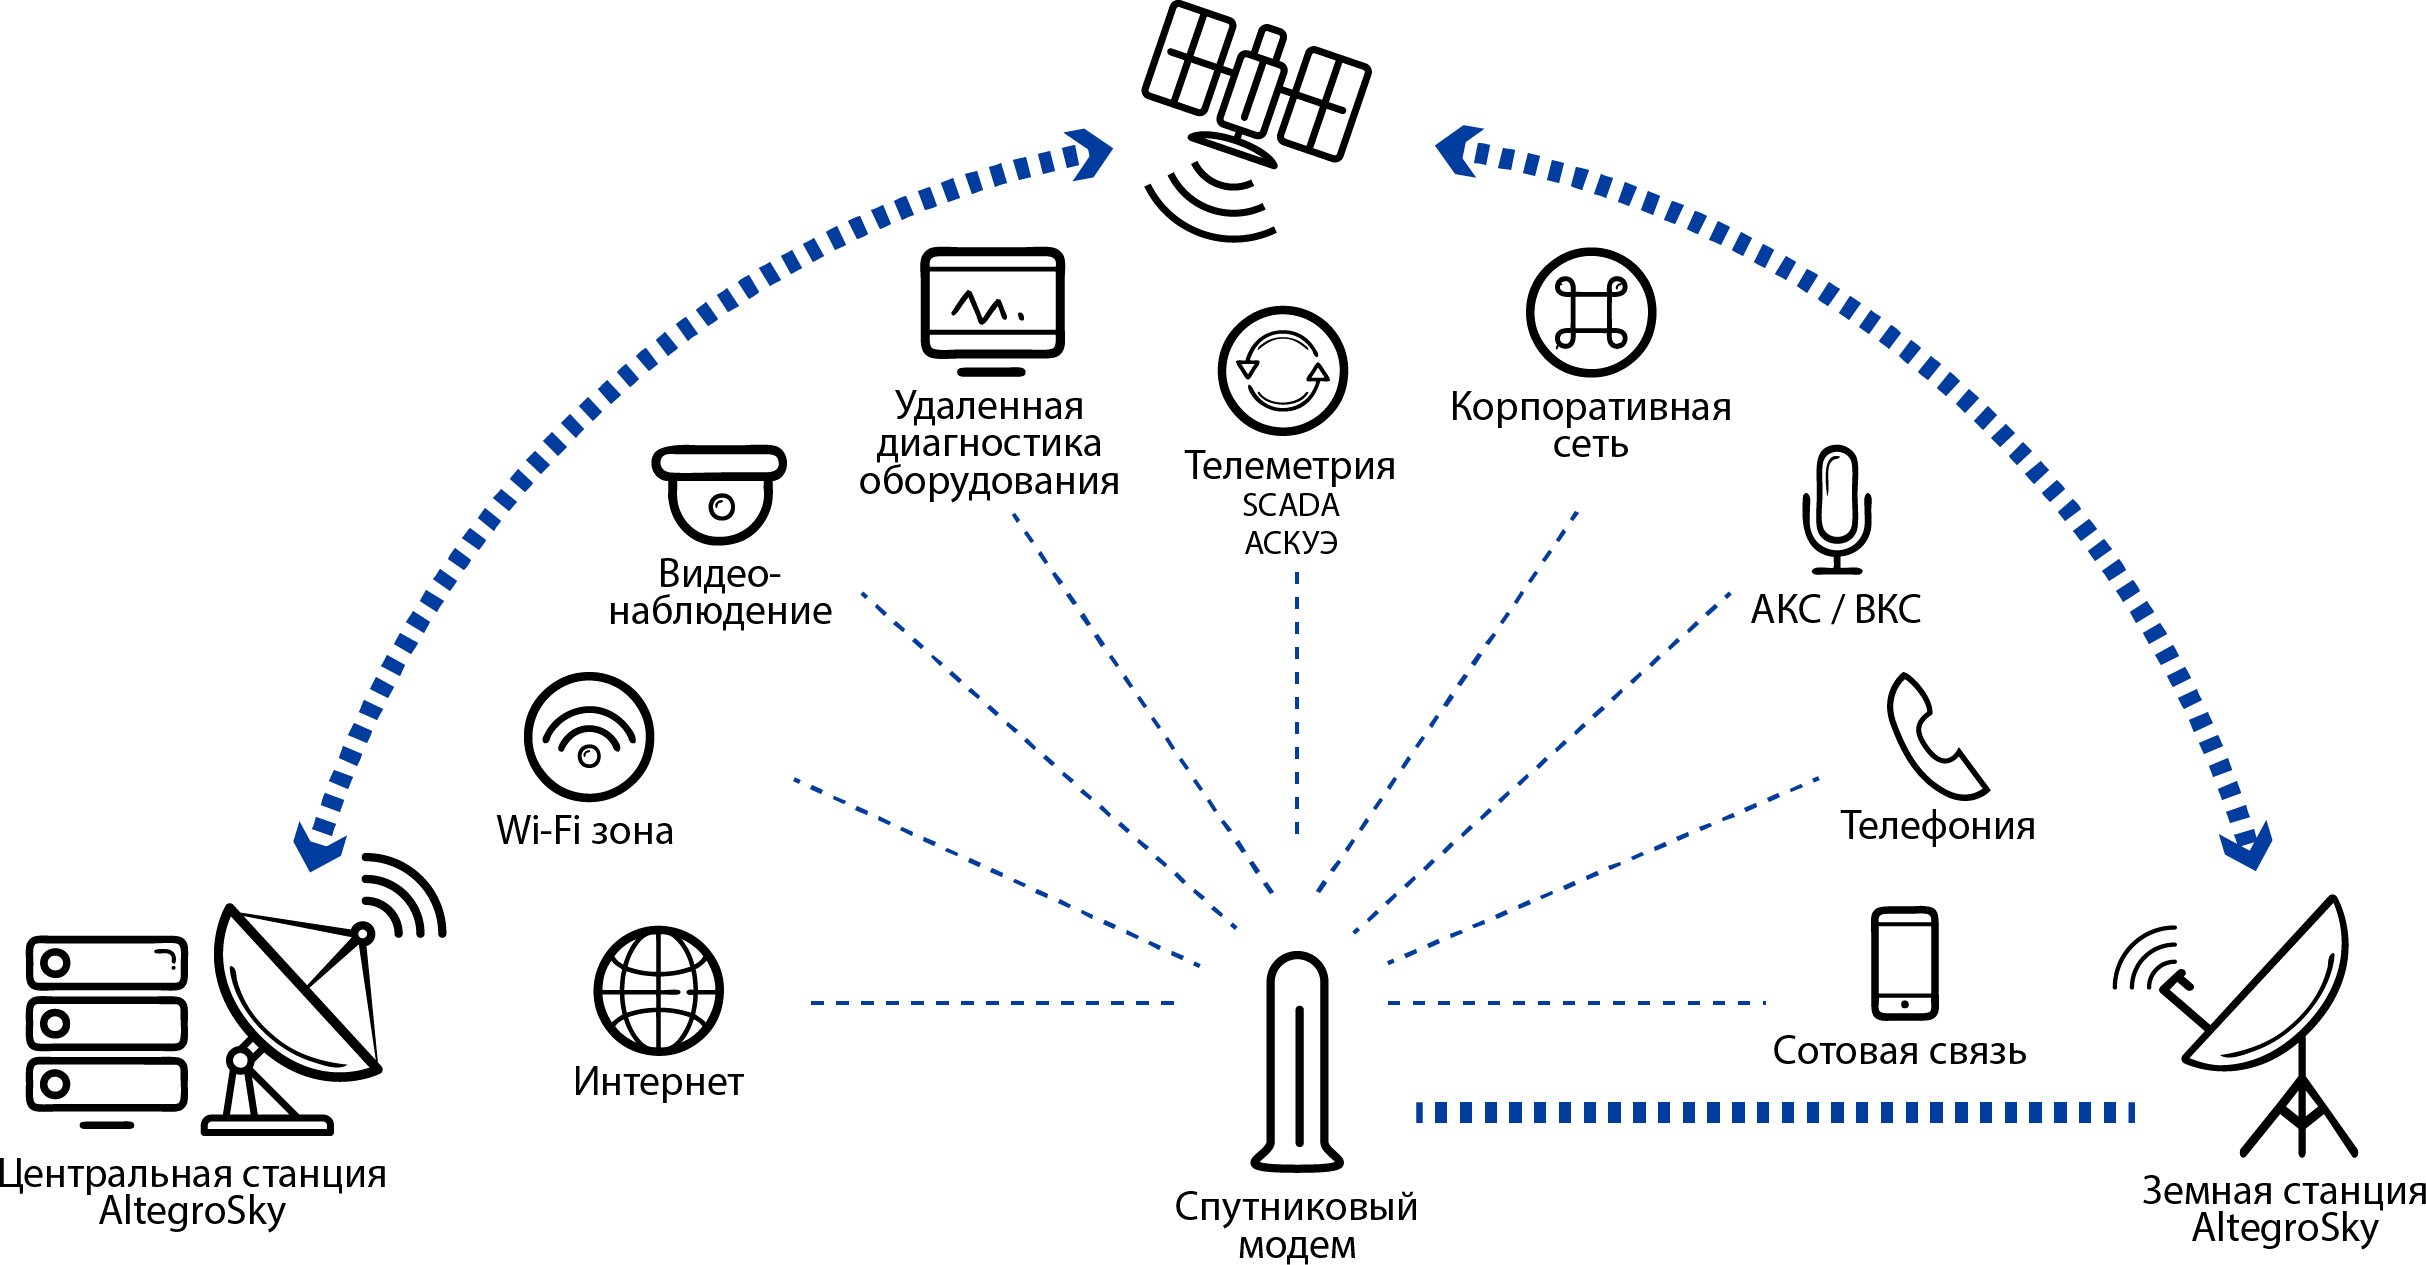 Схема каналов связи на основе технологии VSAT